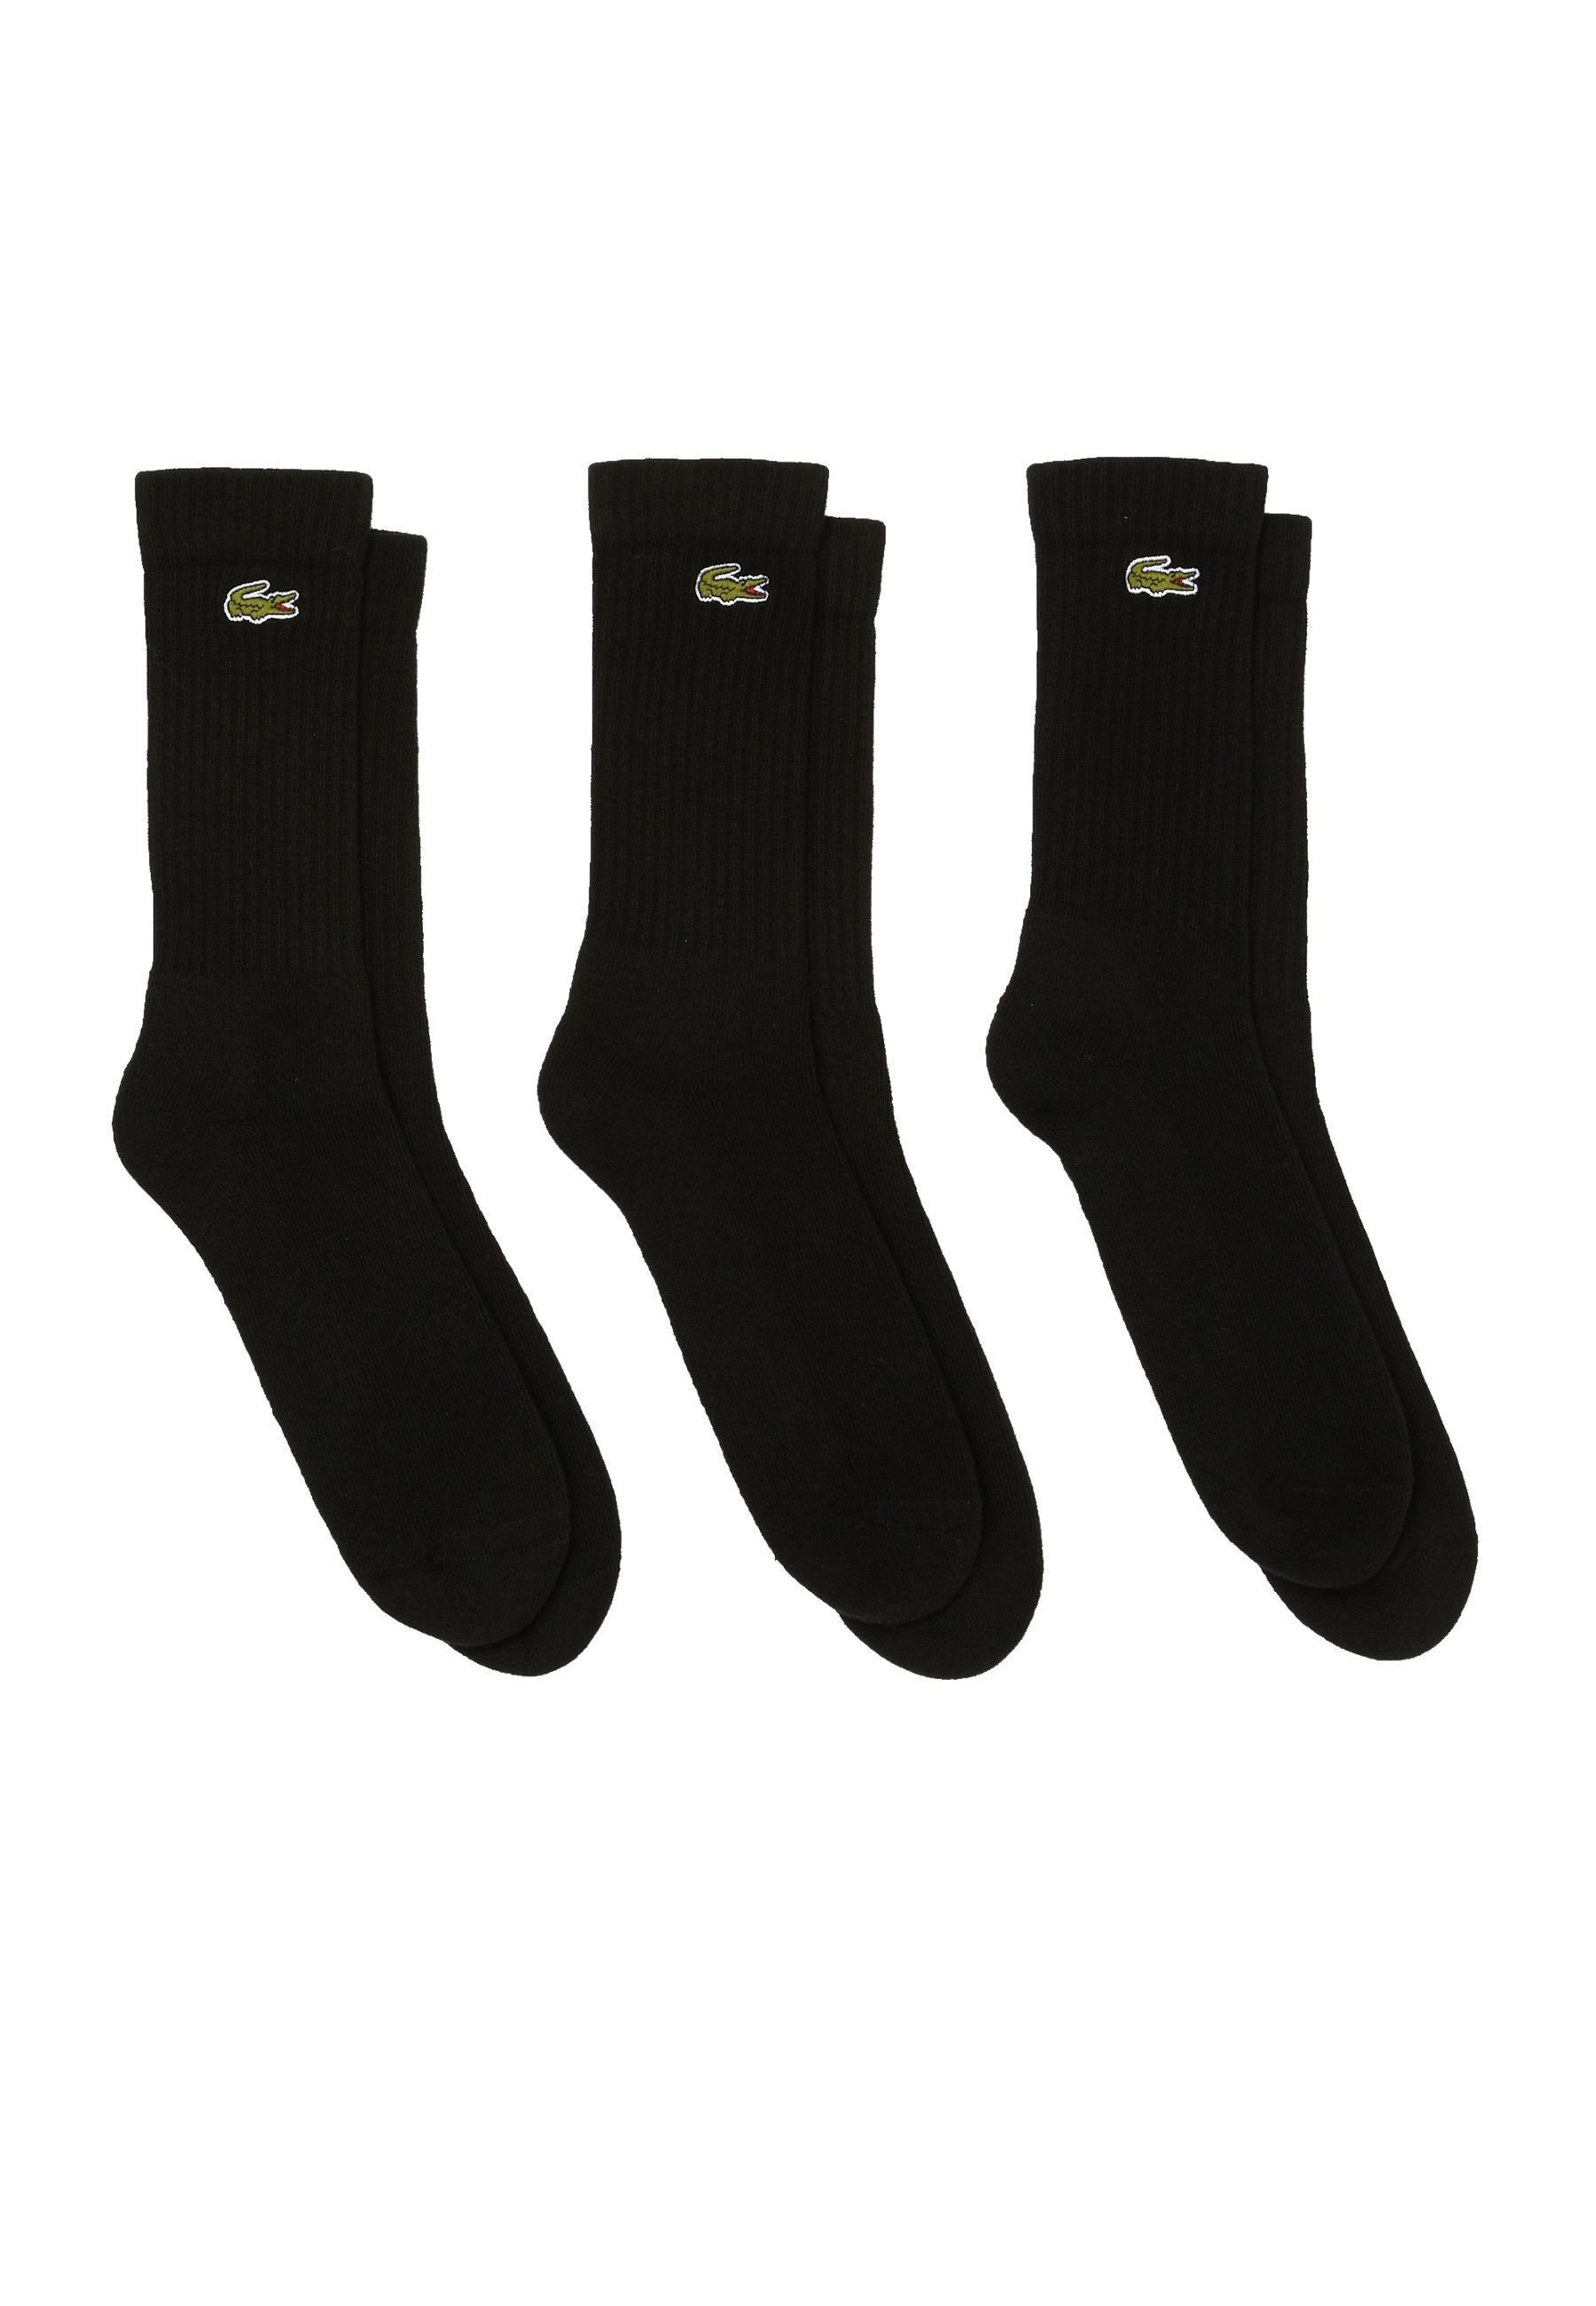 Socken Dreierpack Socken Offer (3-Paar) Socken Lacoste schwarz hohe Permanent